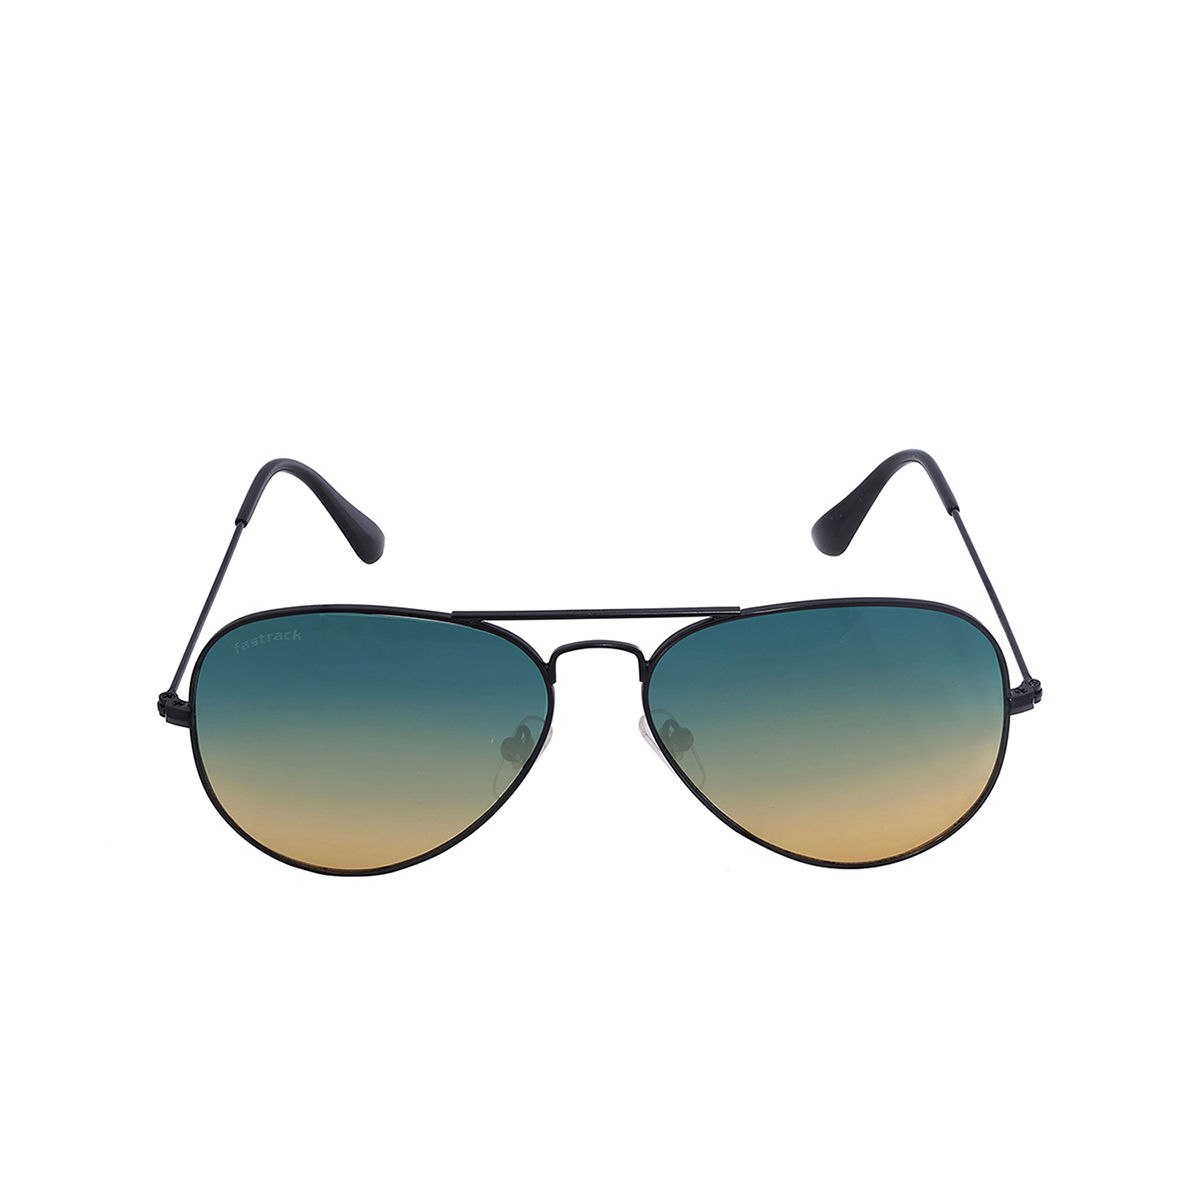 Buy Fastrack Aviator Sunglasses Black, Grey For Men Online @ Best Prices in  India | Flipkart.com